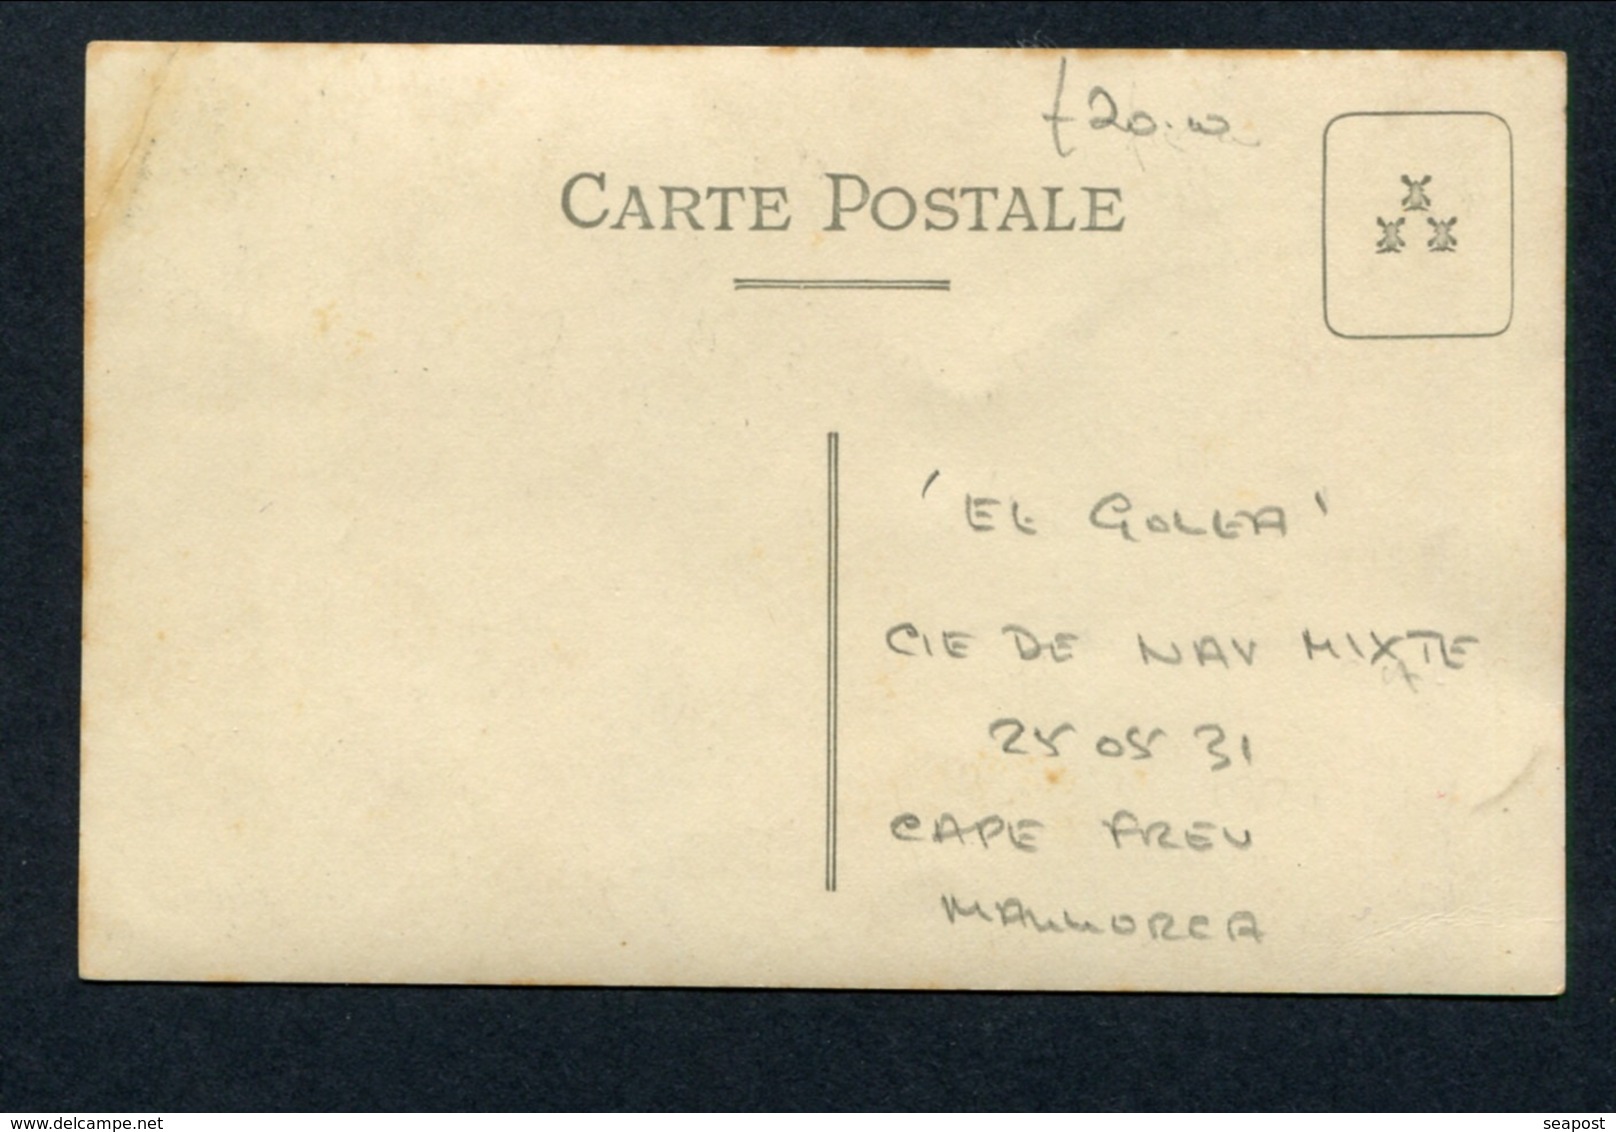 25.5.1931 CIE NAVIGATION MIXTE "EL GOLEA" WRECKED CAPE FREU MAJORCA -- PHOTO POSTCARD - Steamers